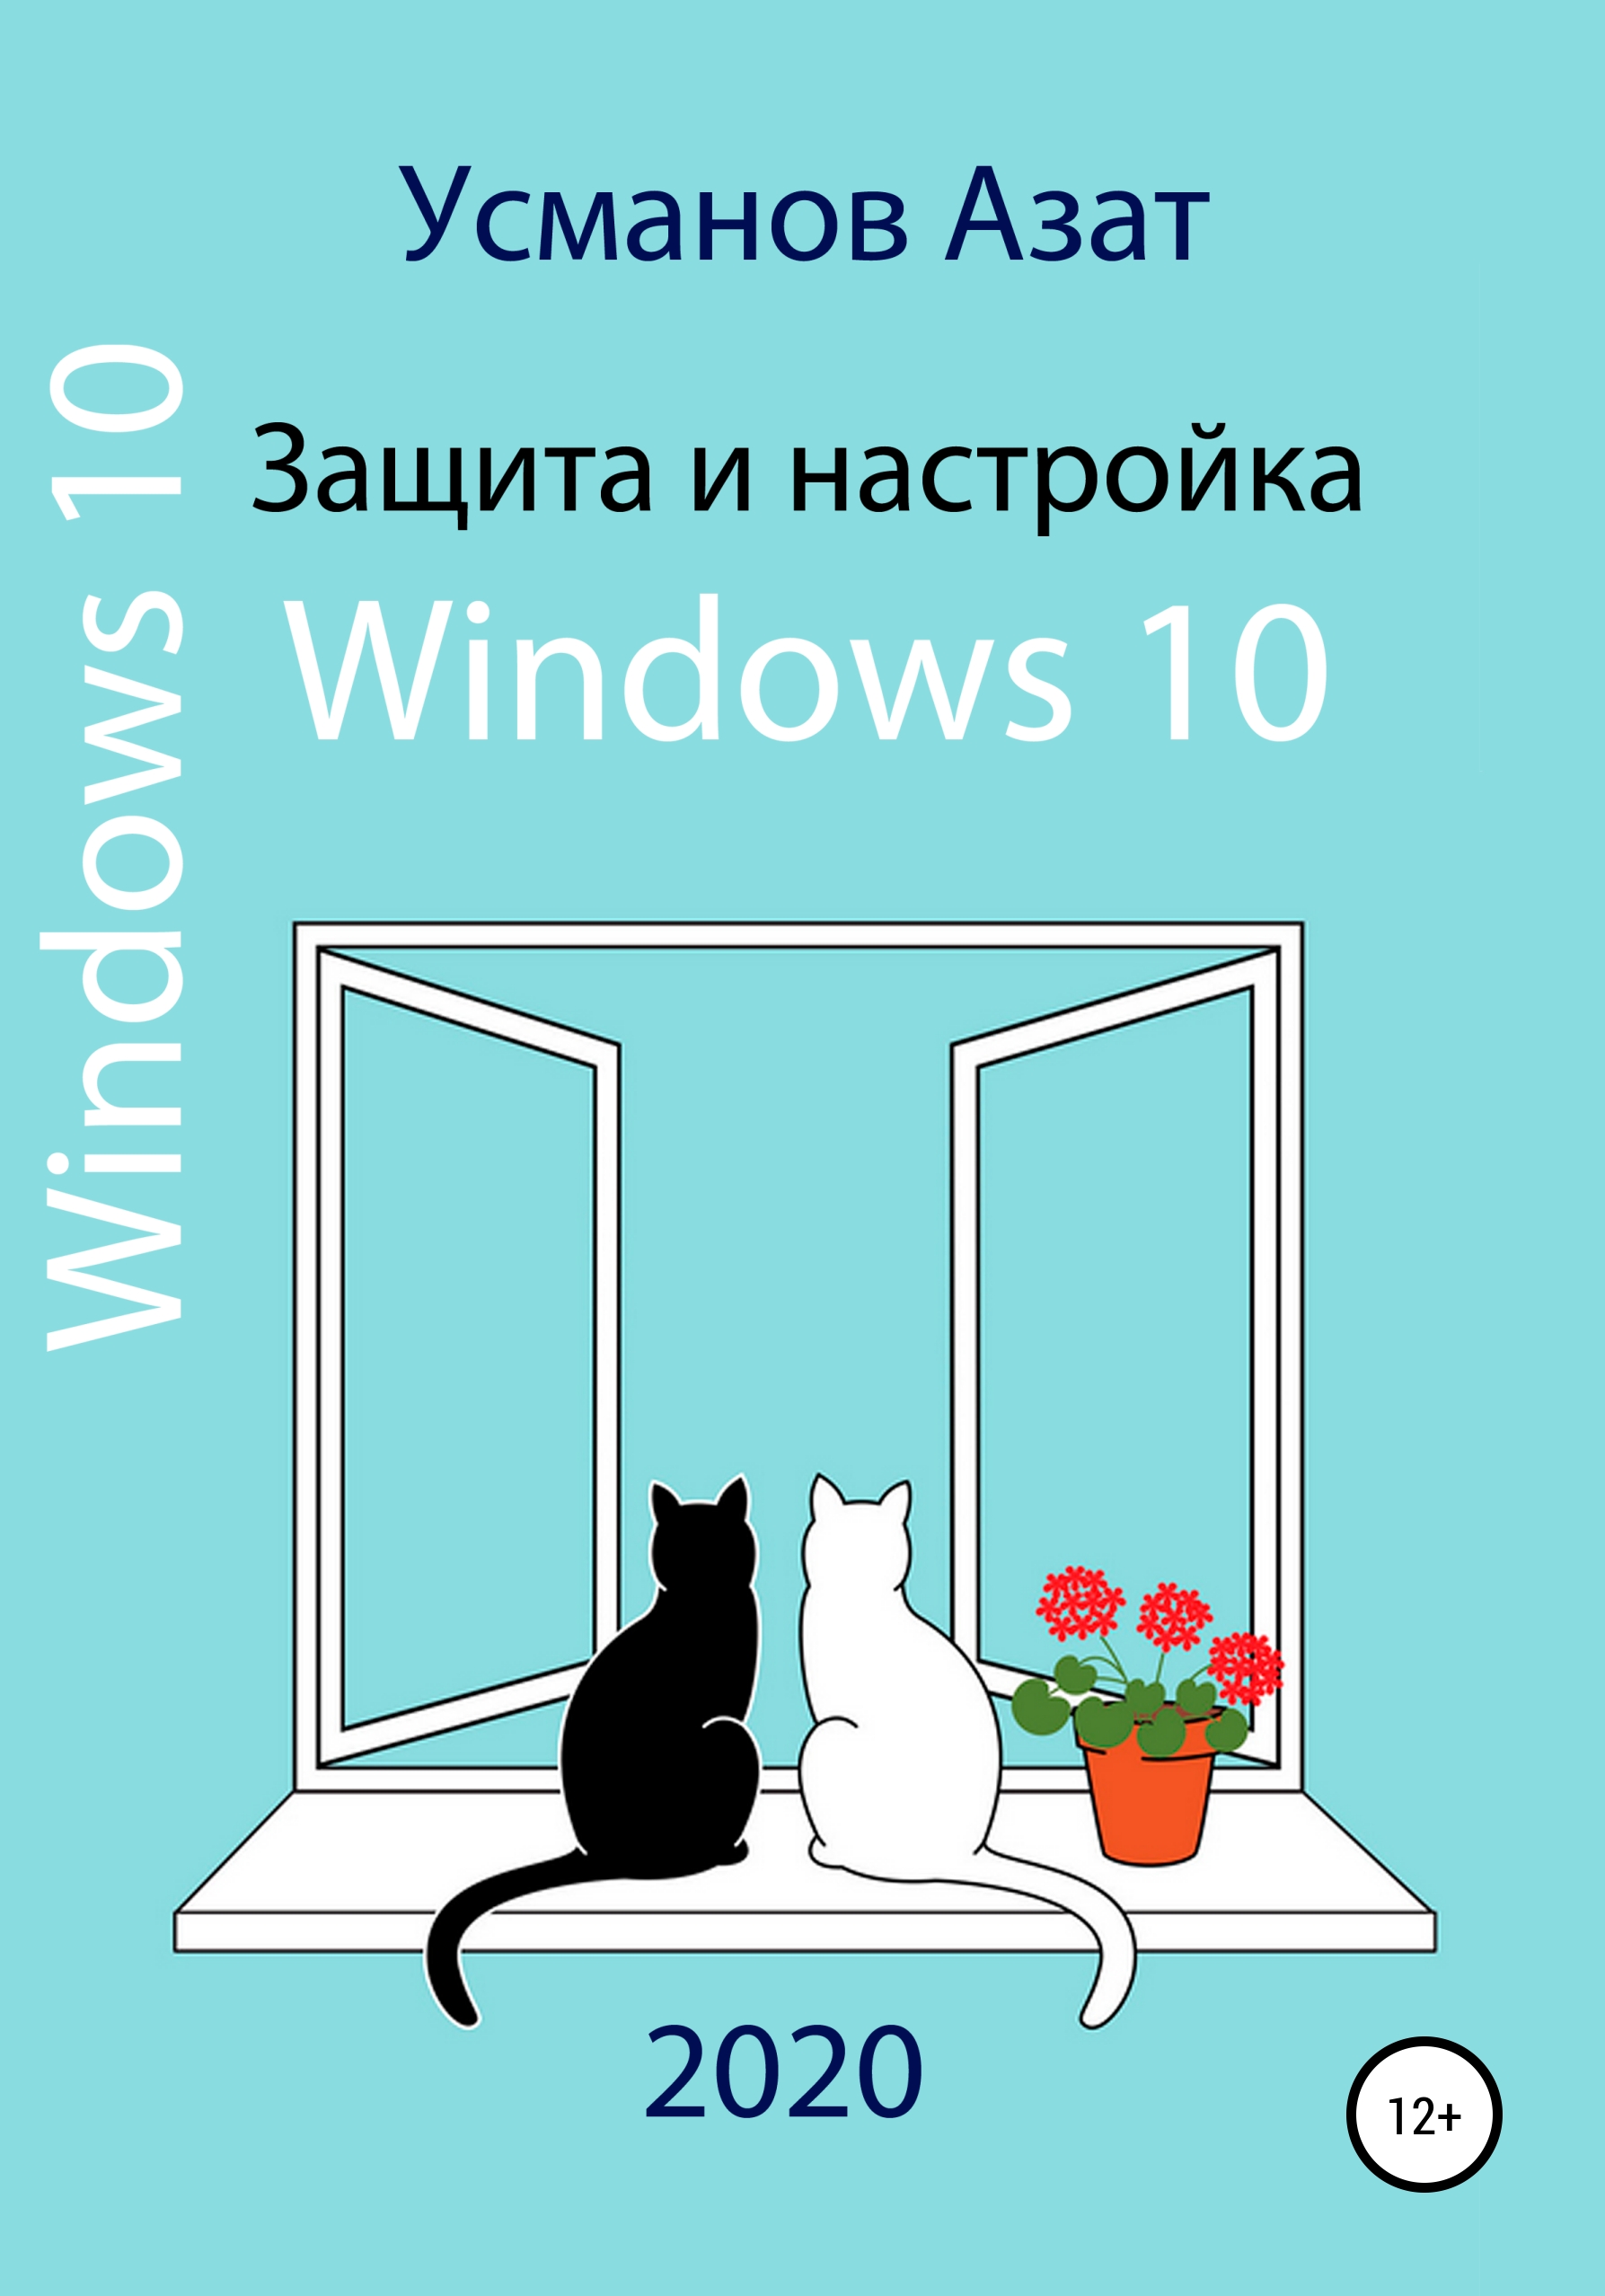 Книга  Защита и настройка Windows 10 созданная Азат Ансарович Усманов может относится к жанру книги о компьютерах, компьютерная справочная литература, ОС и сети. Стоимость электронной книги Защита и настройка Windows 10 с идентификатором 55614449 составляет 109.00 руб.